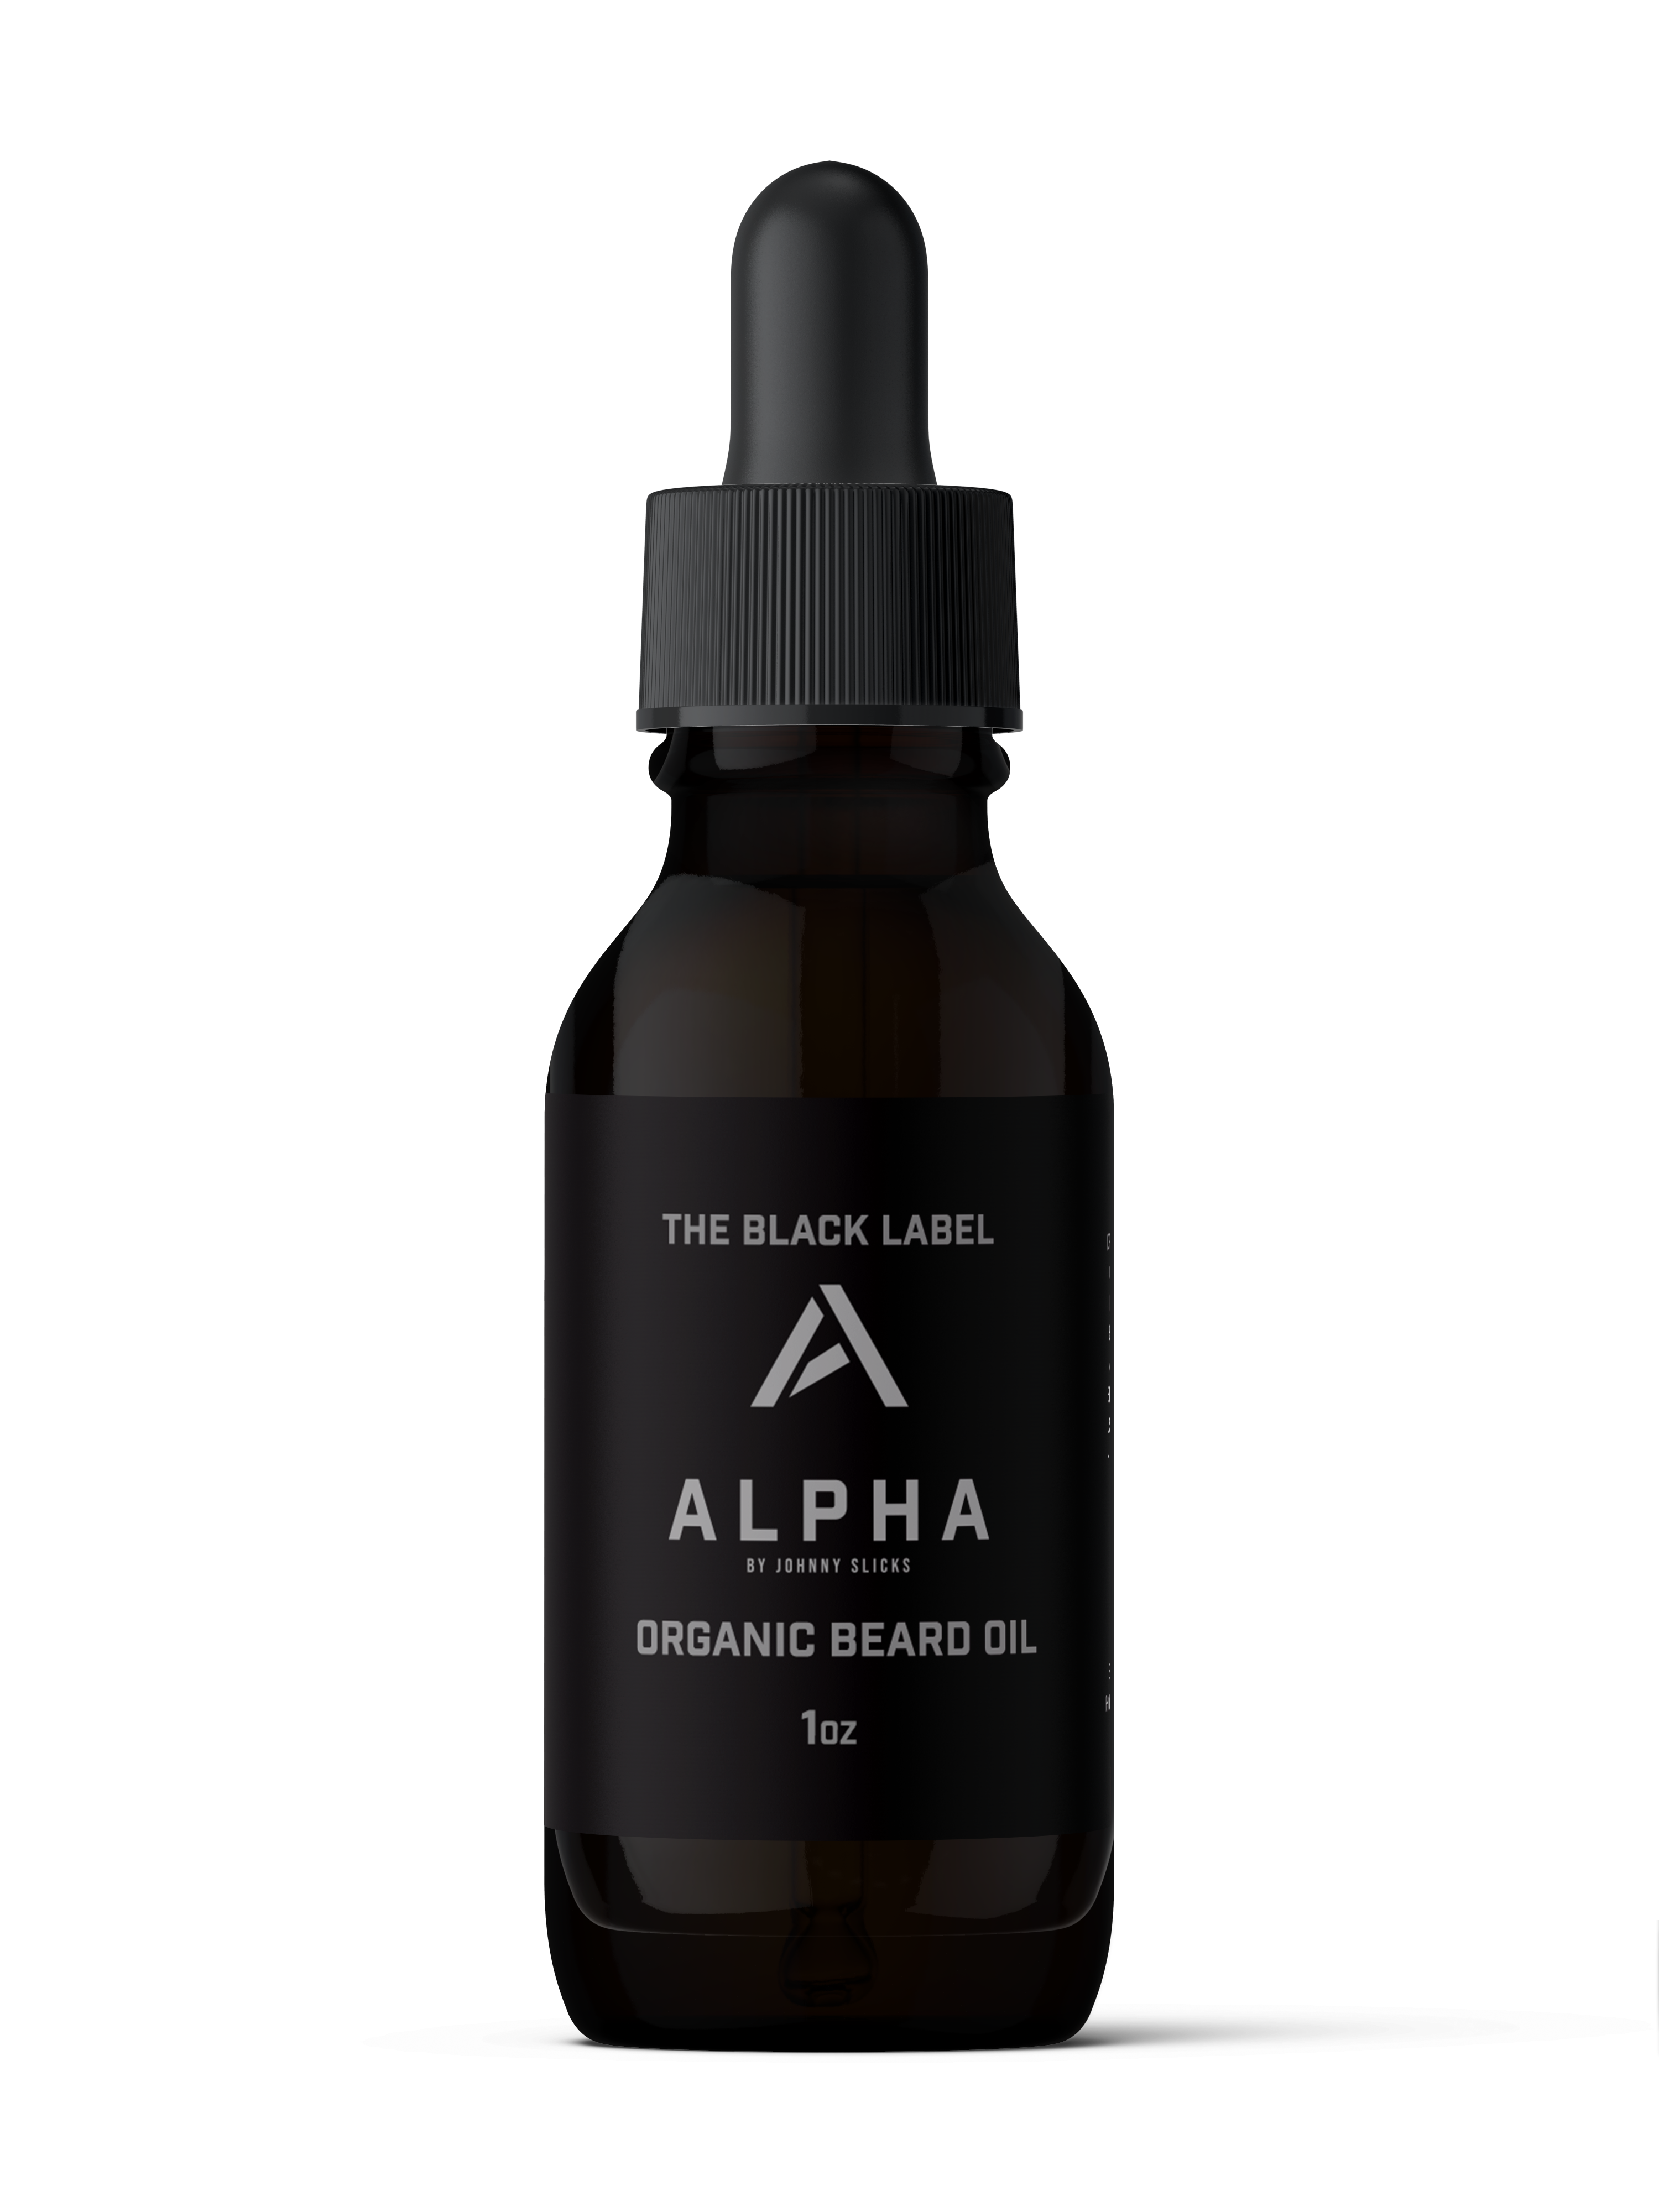 Alpha Beard Oil